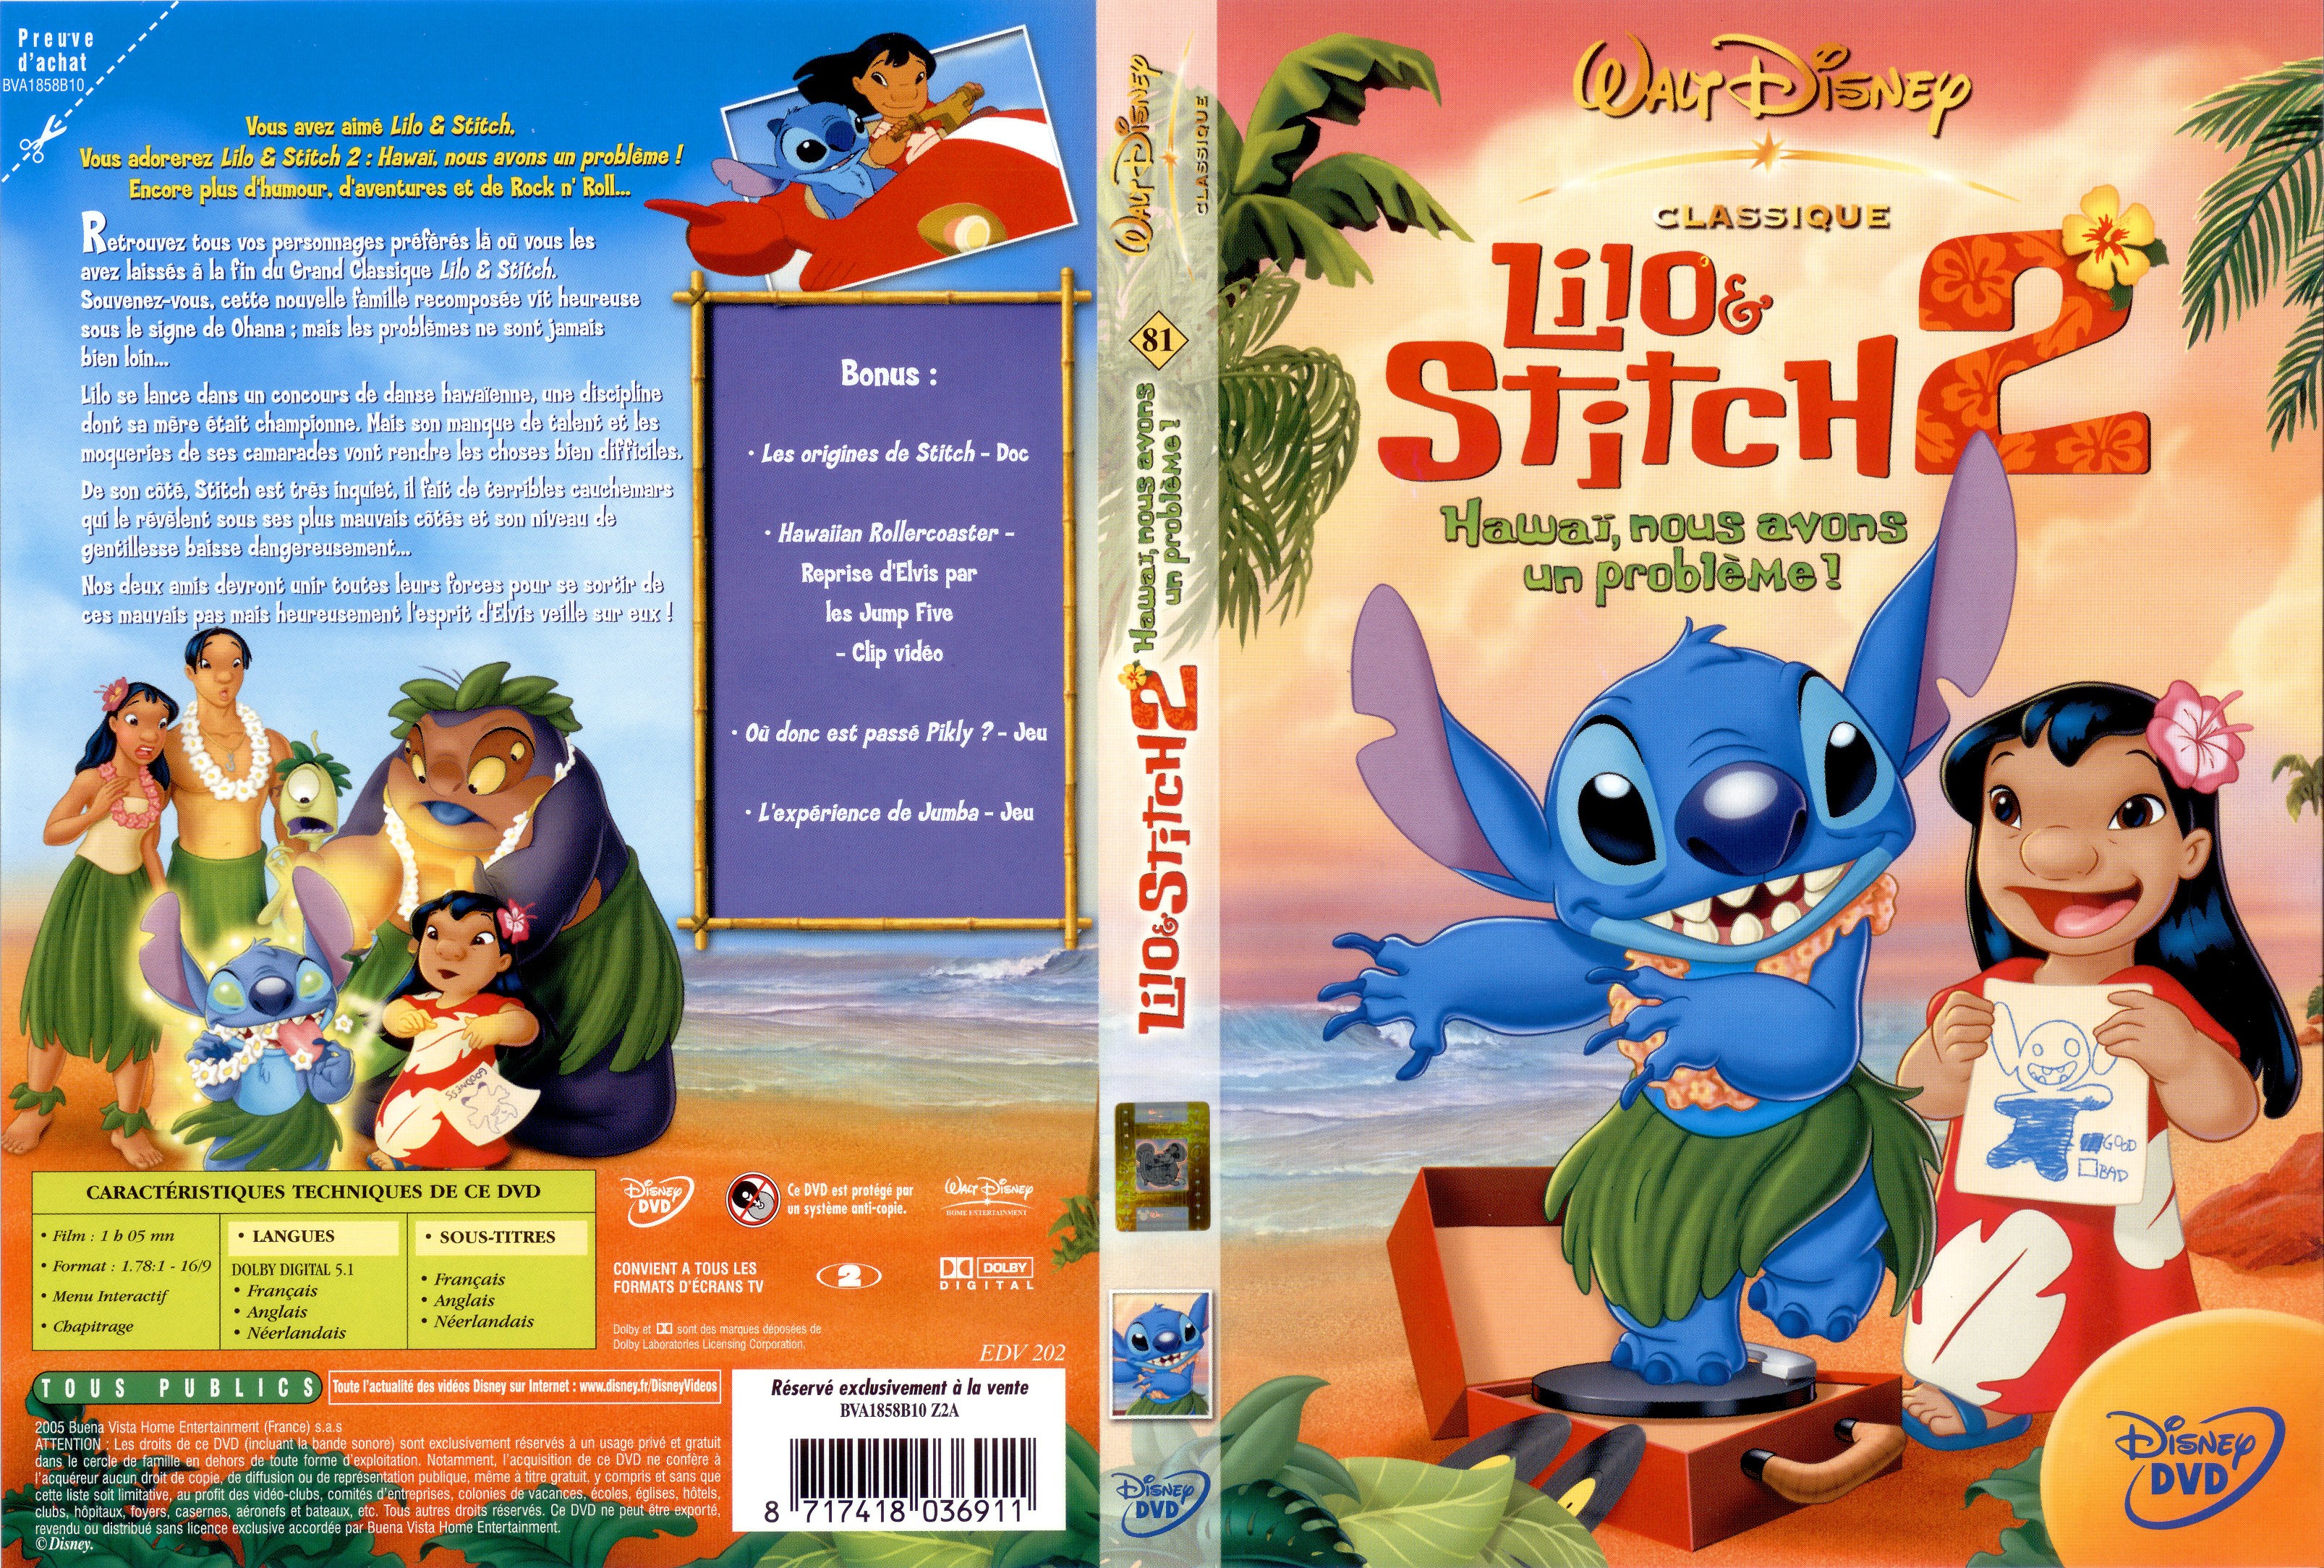 Jaquette DVD Lilo et Stitch 2.